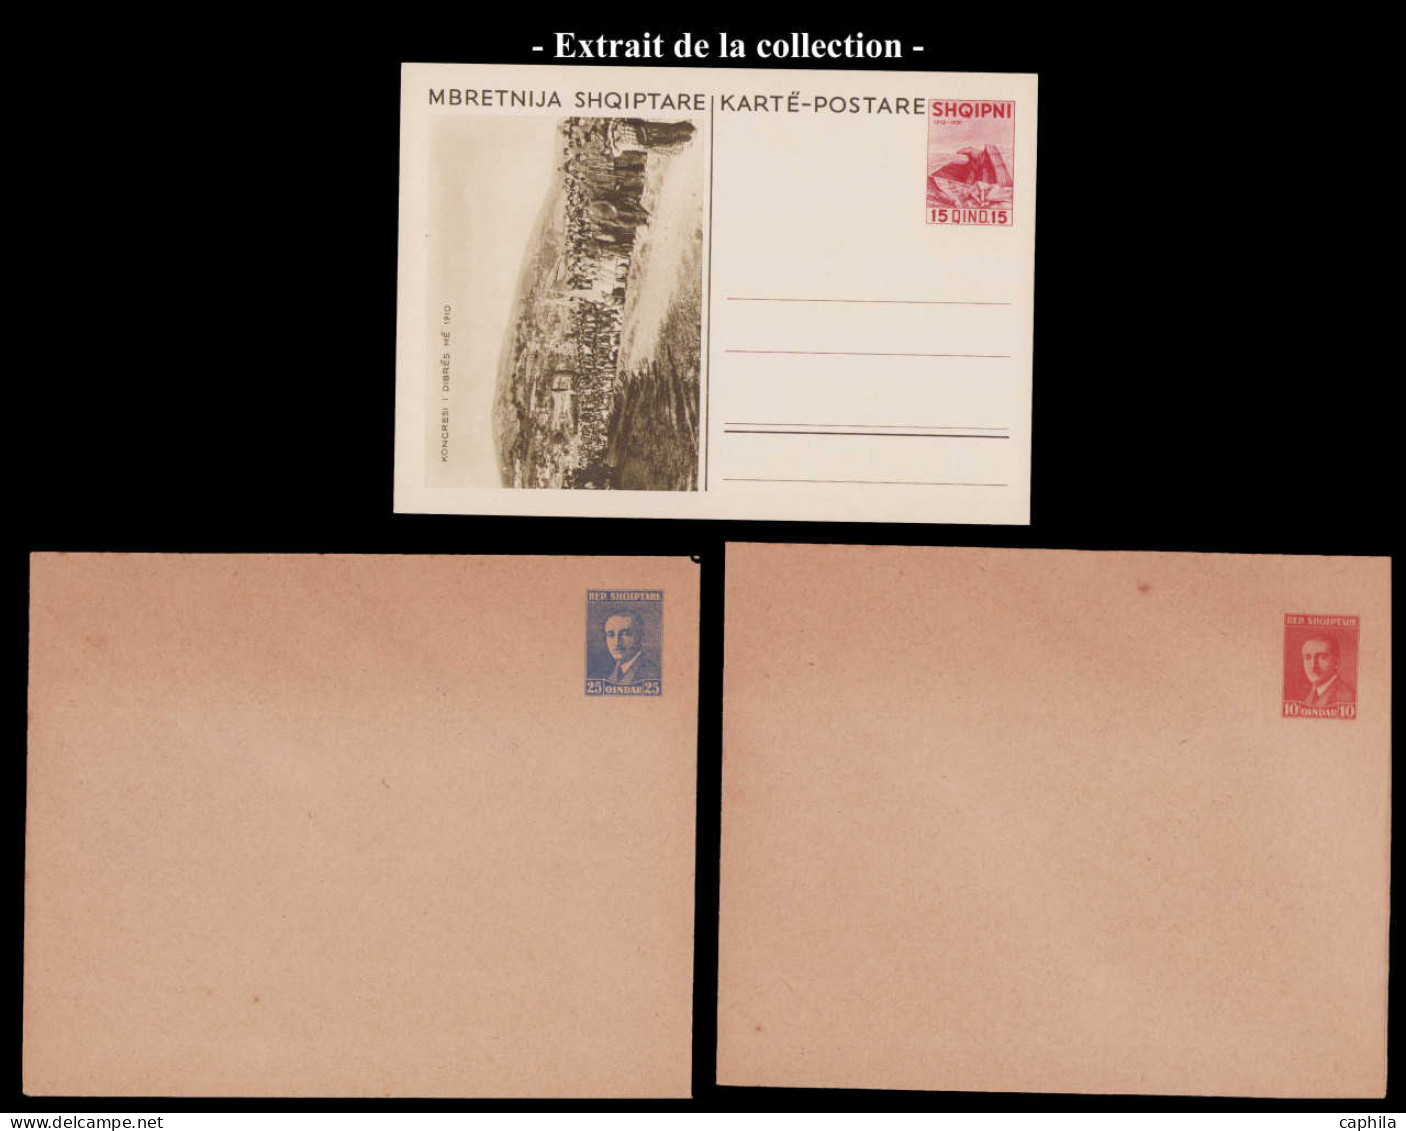 N ALBANIE - Entiers Postaux - Lot d'entiers postaux entre 1923 et 1943, dont multiples (Michel)